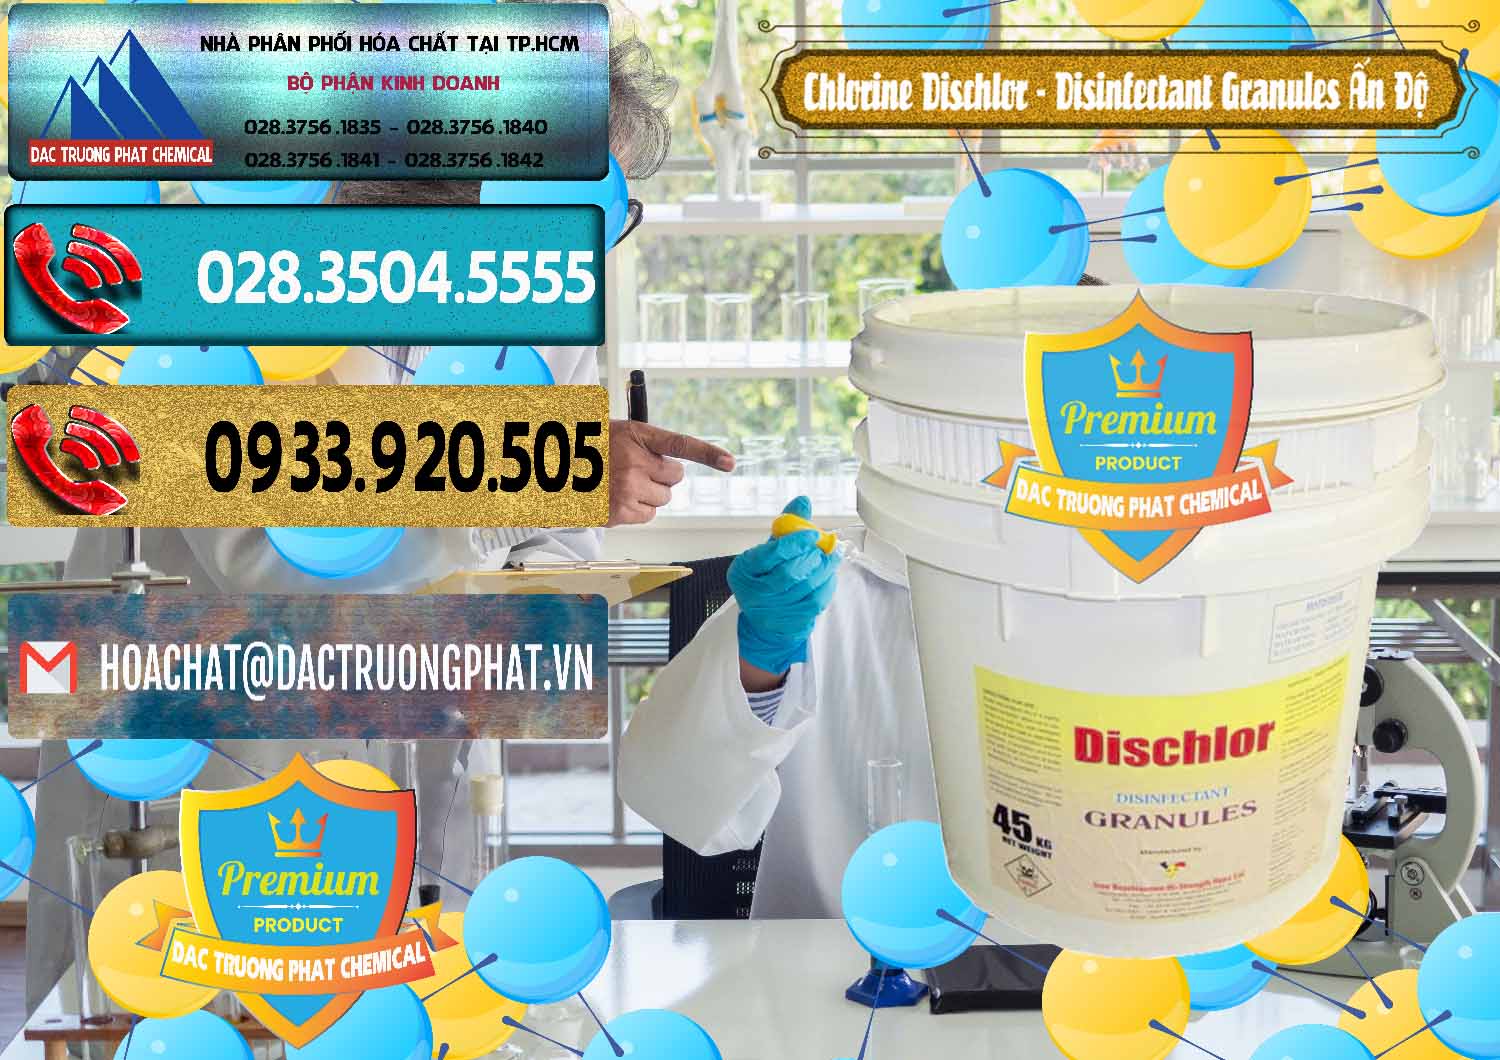 Cty chuyên kinh doanh ( bán ) Chlorine – Clorin 70% Dischlor - Disinfectant Granules Ấn Độ India - 0248 - Nơi bán ( cung cấp ) hóa chất tại TP.HCM - hoachatdetnhuom.com